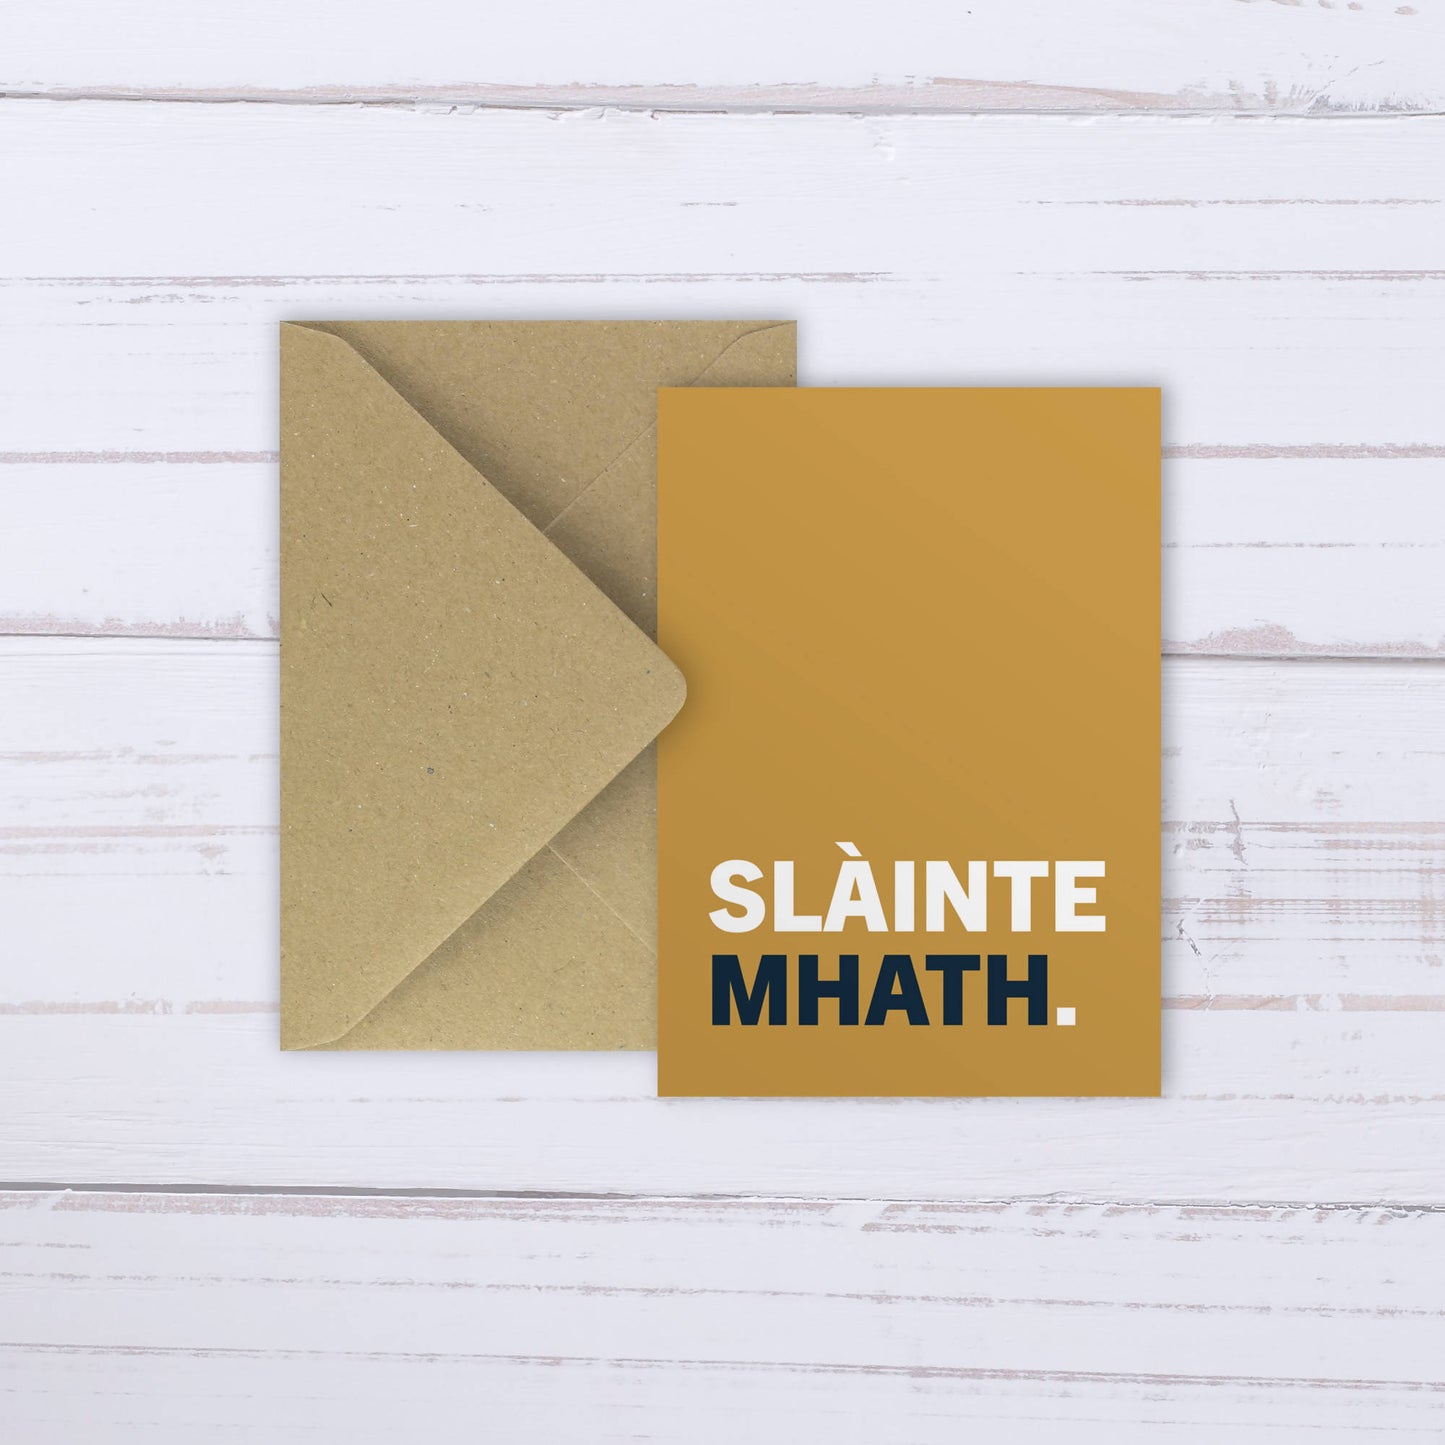 'Slàinte Mhath' card